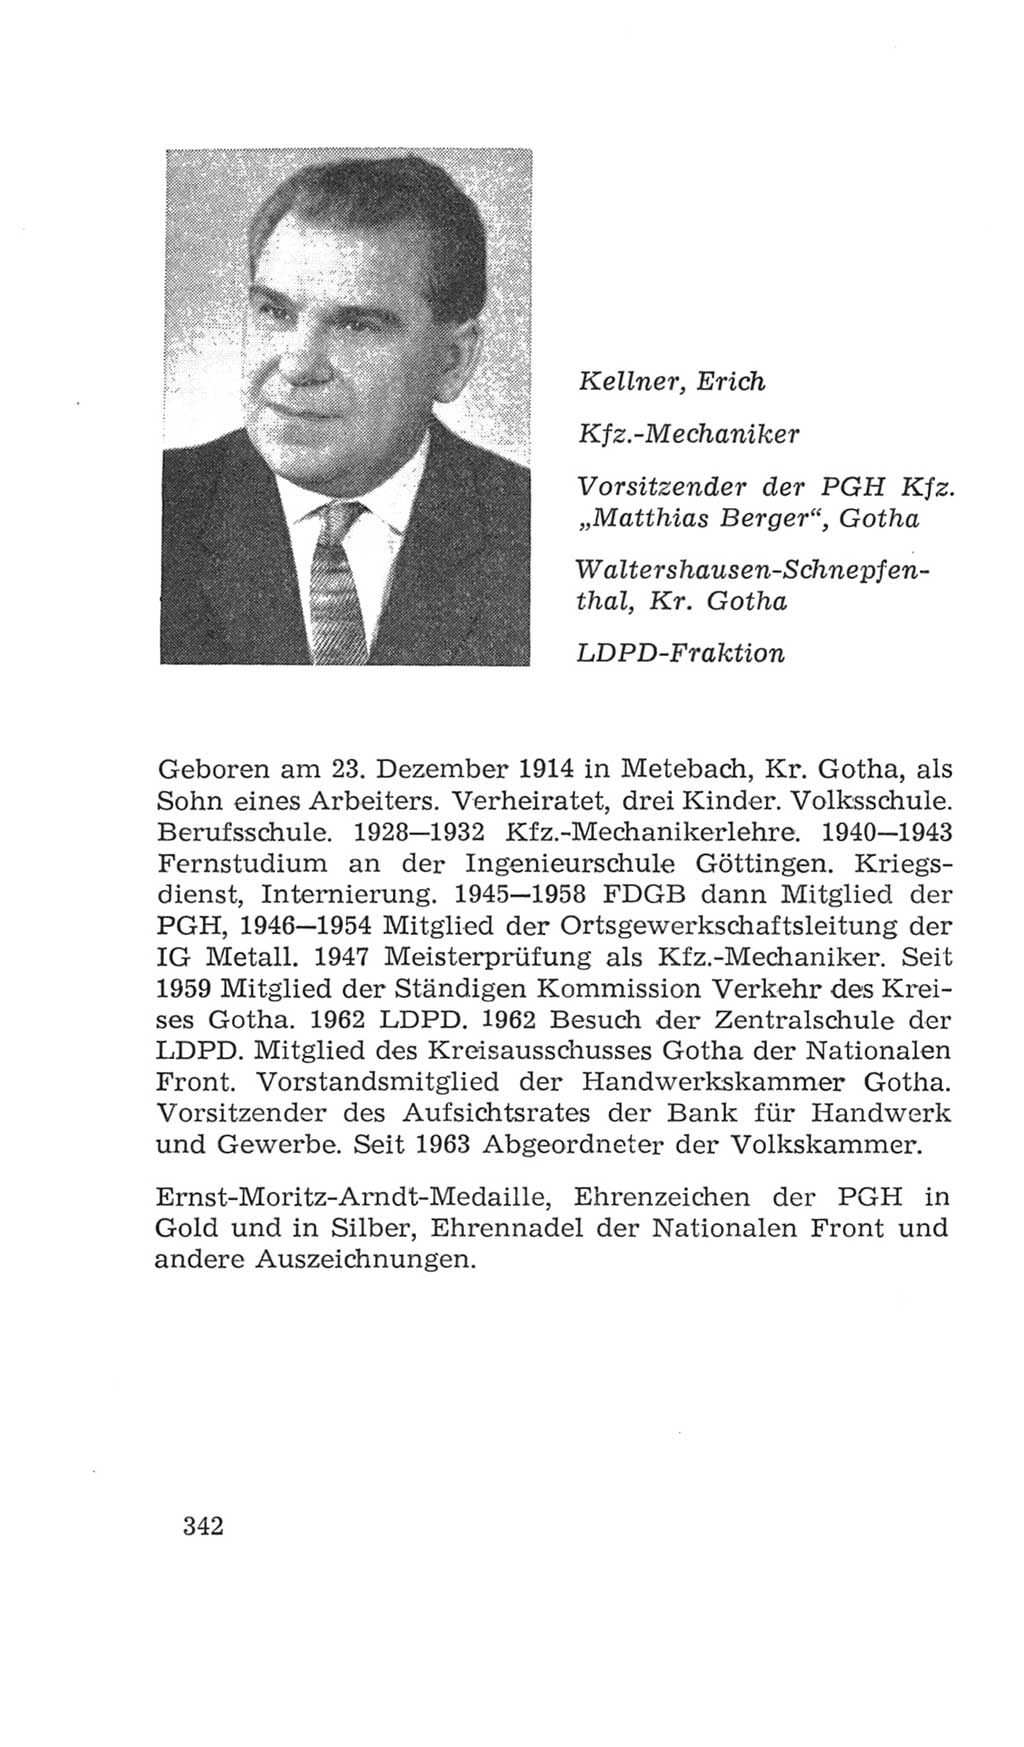 Volkskammer (VK) der Deutschen Demokratischen Republik (DDR), 4. Wahlperiode 1963-1967, Seite 342 (VK. DDR 4. WP. 1963-1967, S. 342)